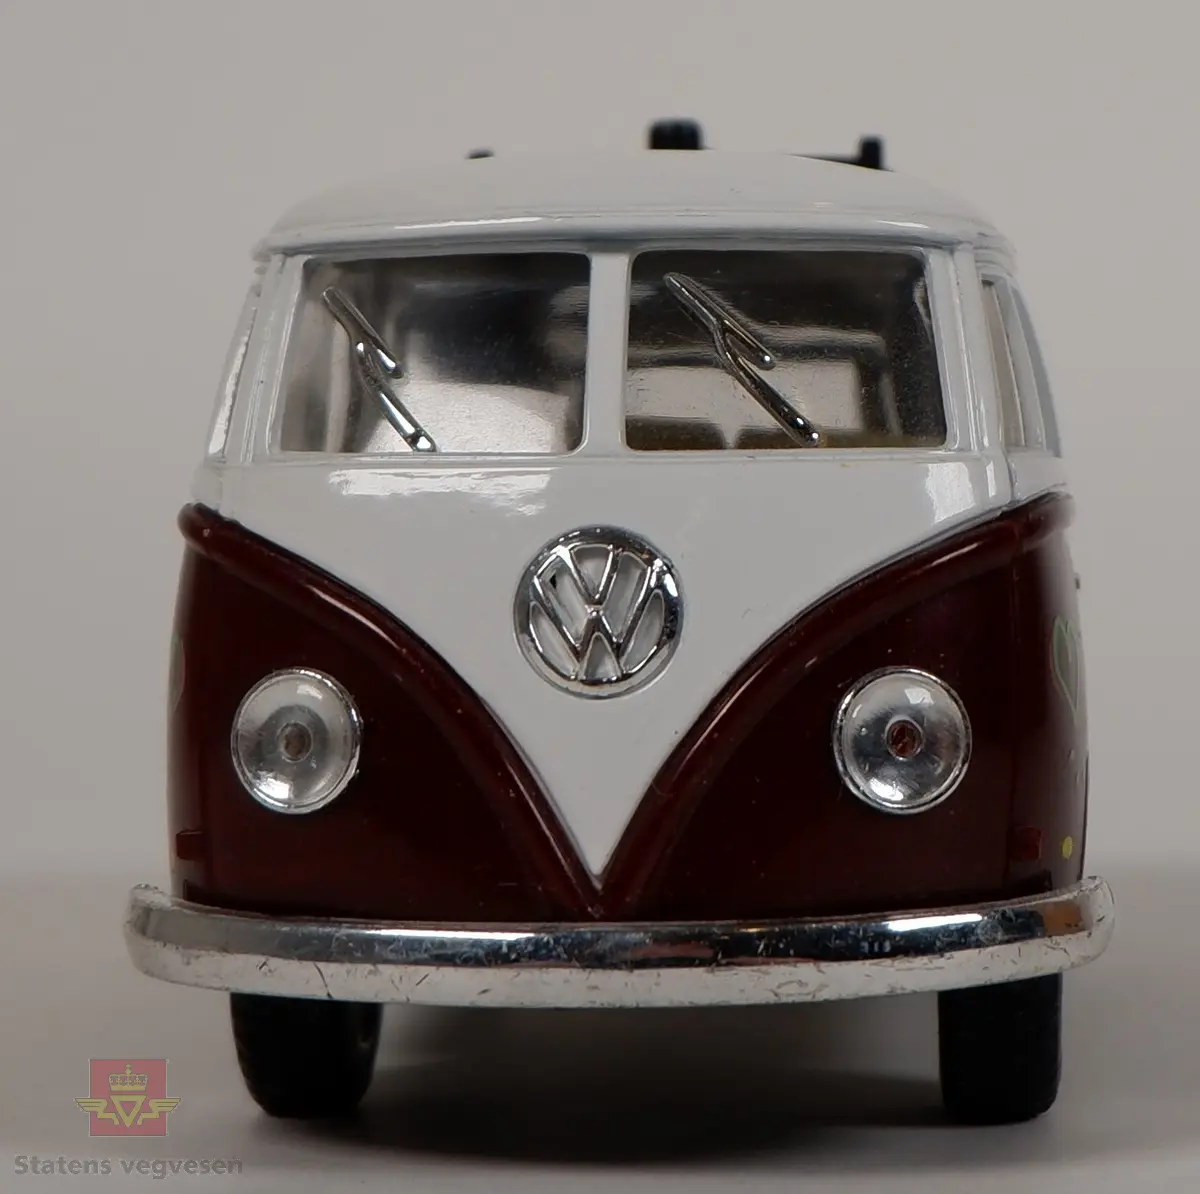 Miniatyrmodell av Volkswagen Transporter T1. Fargen på bilen er hvit og brun, og den er dekorert med hjerter, blomster, fugler og fredstegn i flere farger. Bilen er laget hovedsakelig i metall med plastunderstell og detaljer. Skala 1:32.